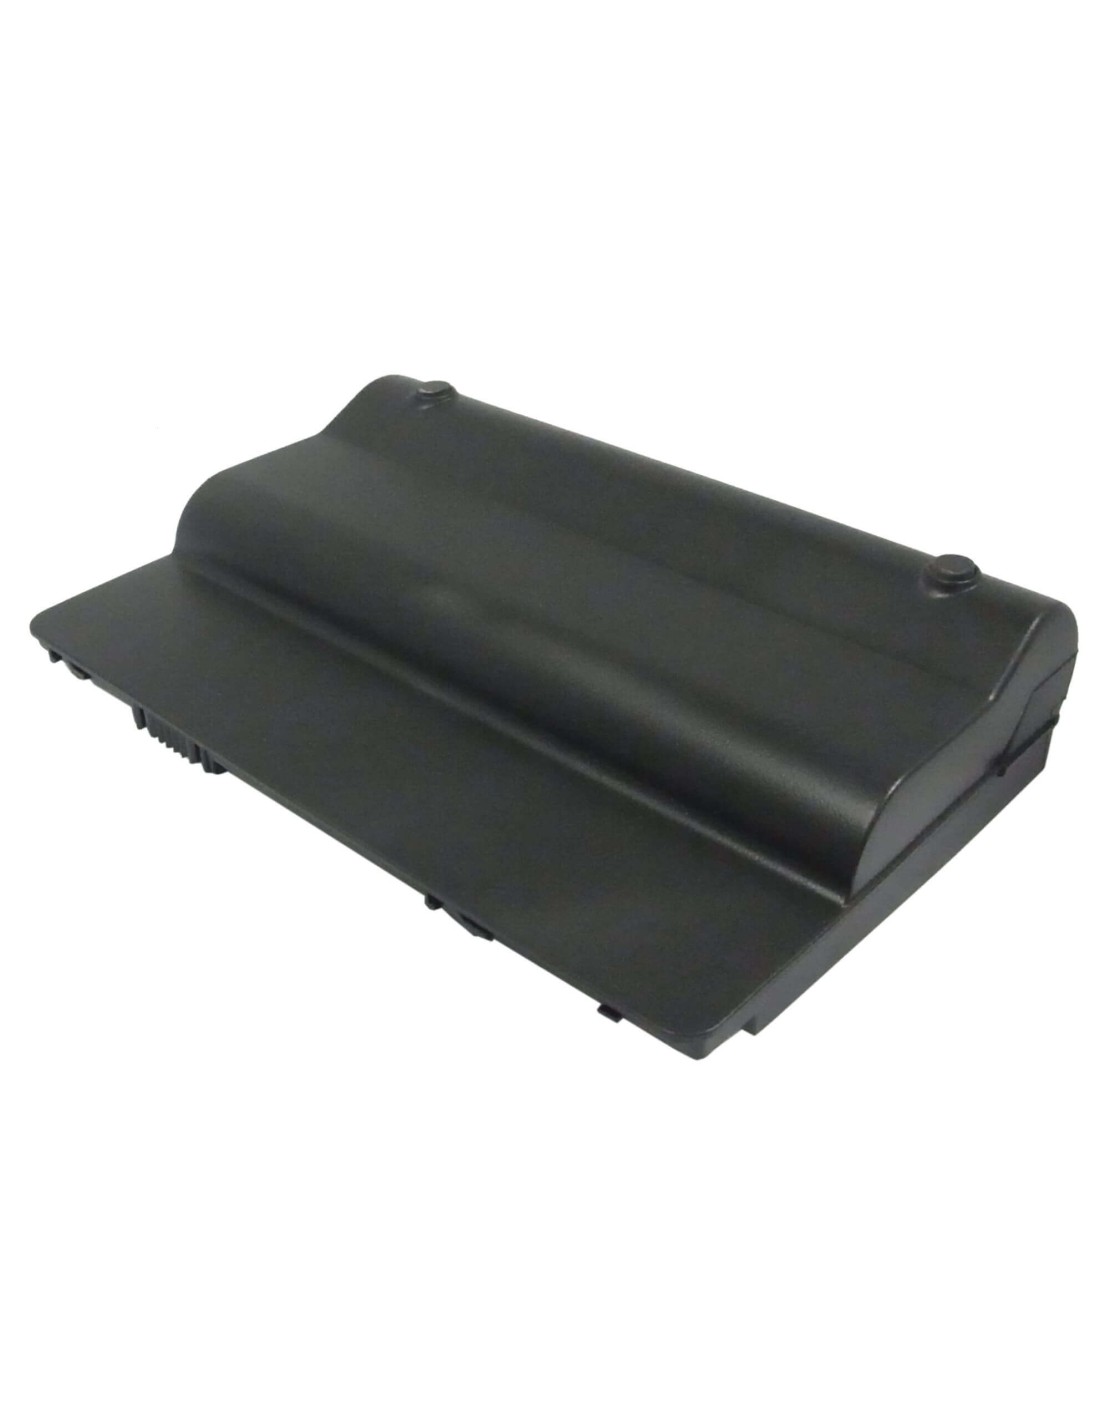 Black Battery for HP Mini, Mini 1000, Mini 1001 11.1V, 4400mAh - 48.84Wh